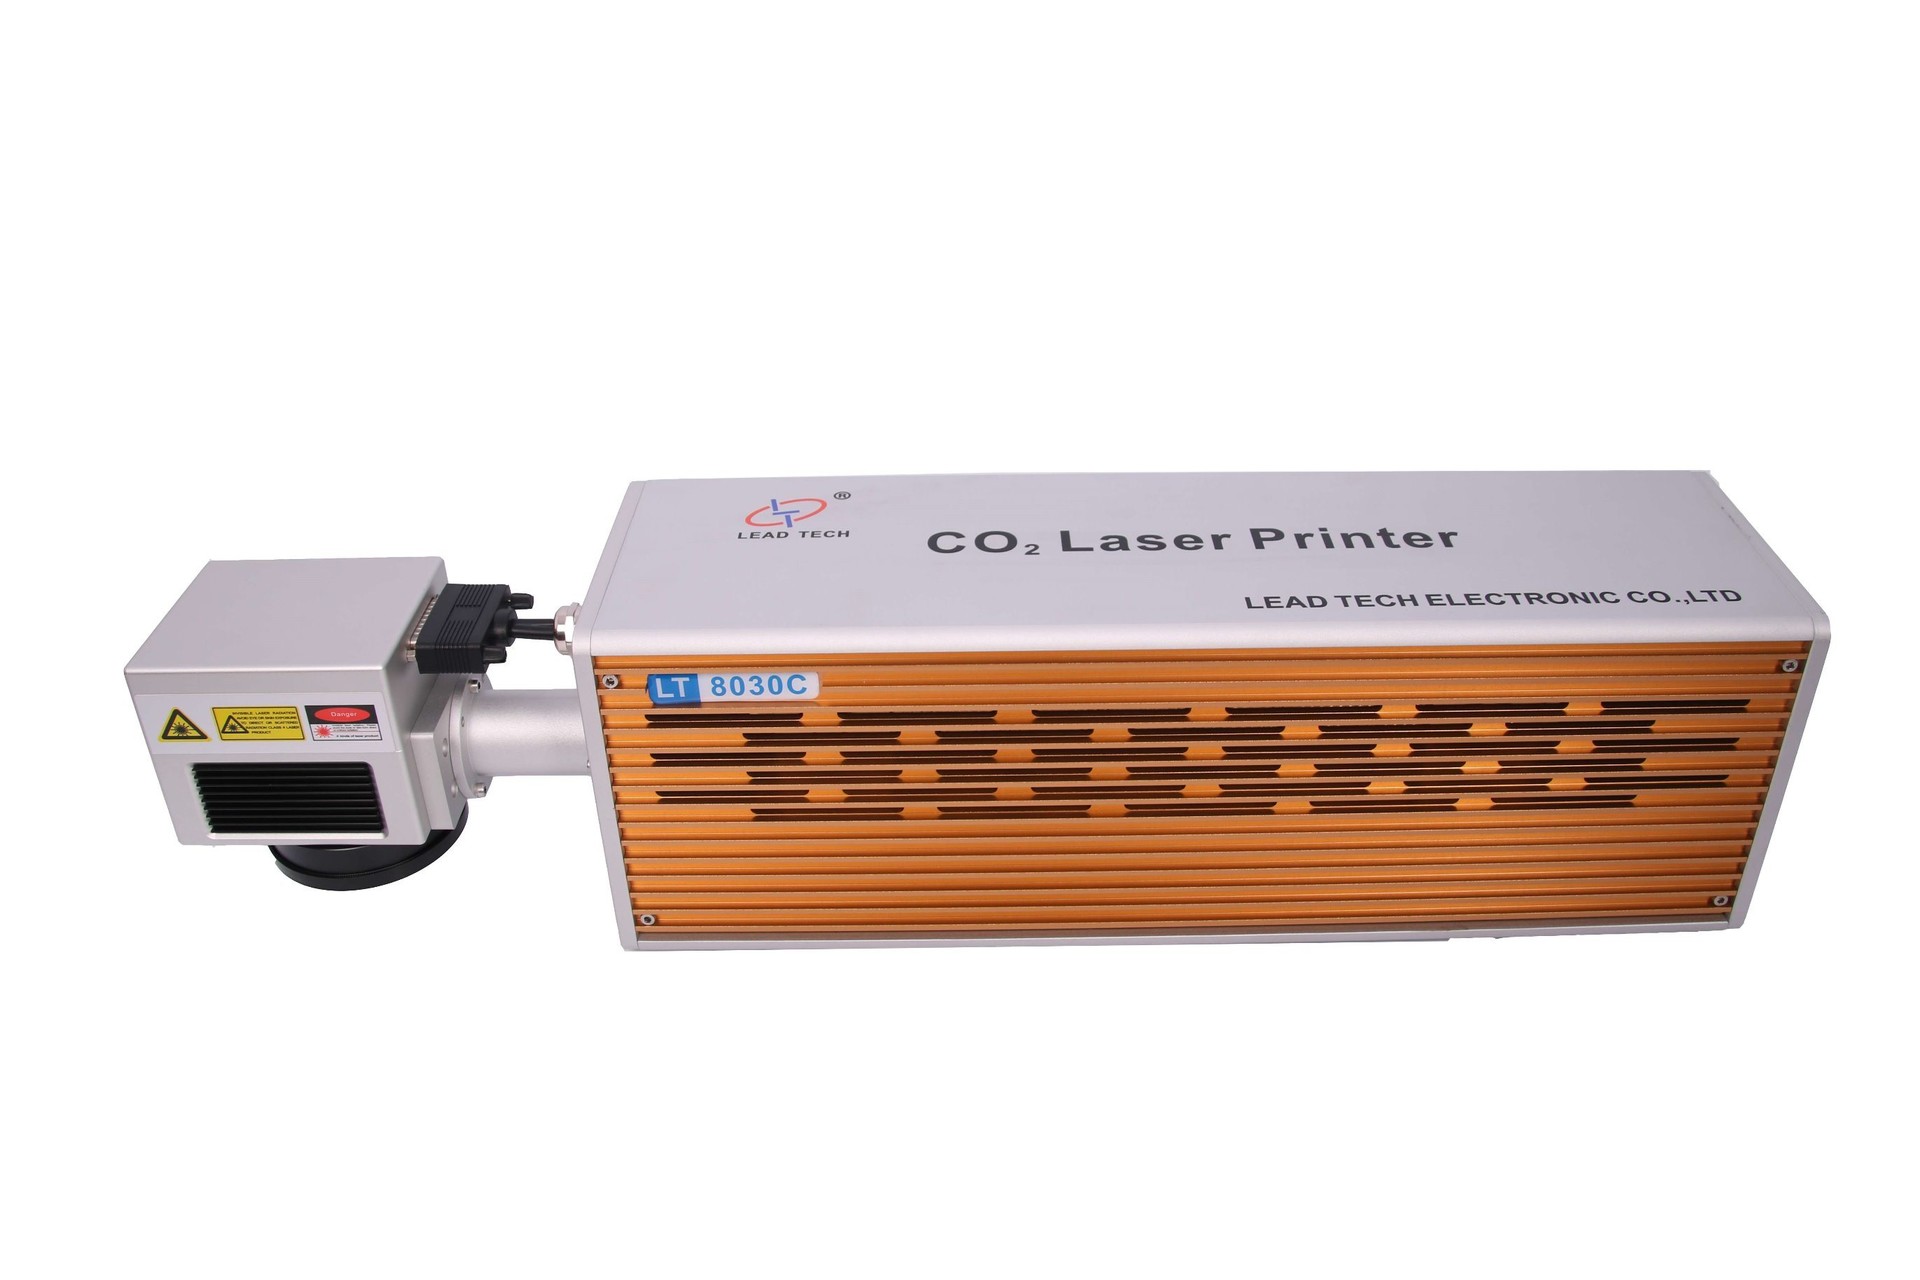 Lt8020c/Lt8030c CO2 20W/30W High Speed Laser Printer